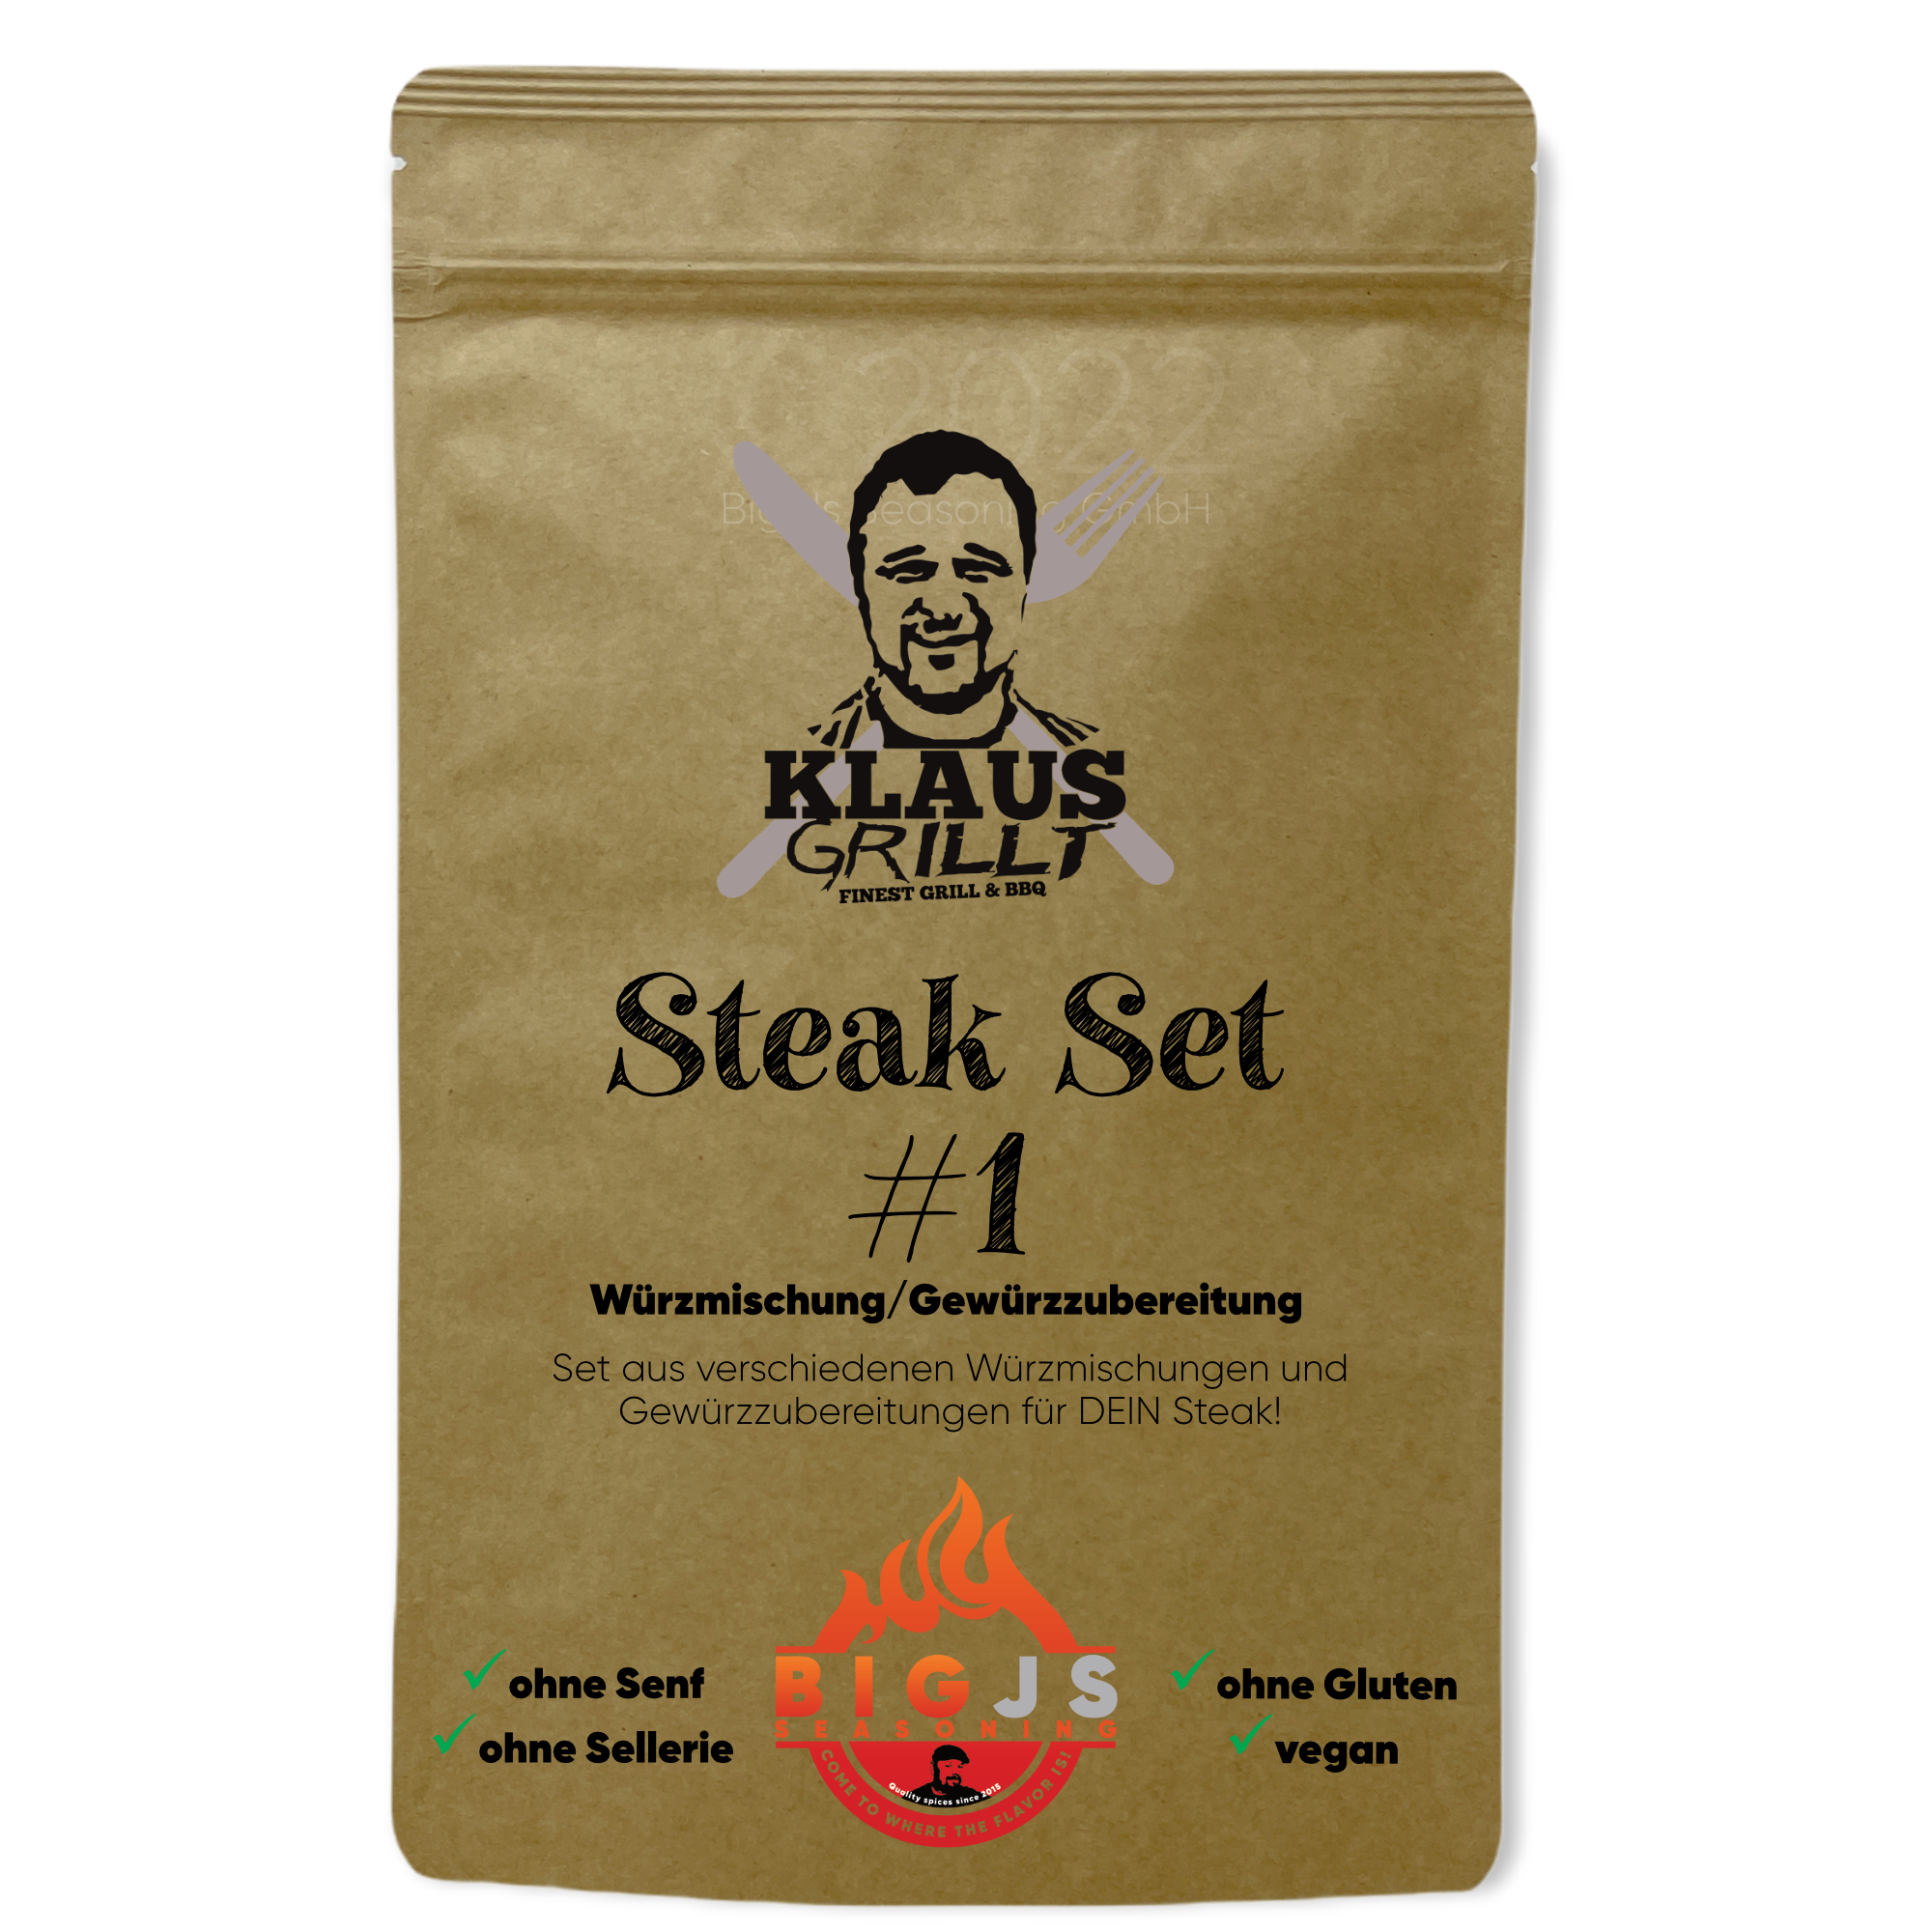 Klaus grillt Steak Set #1